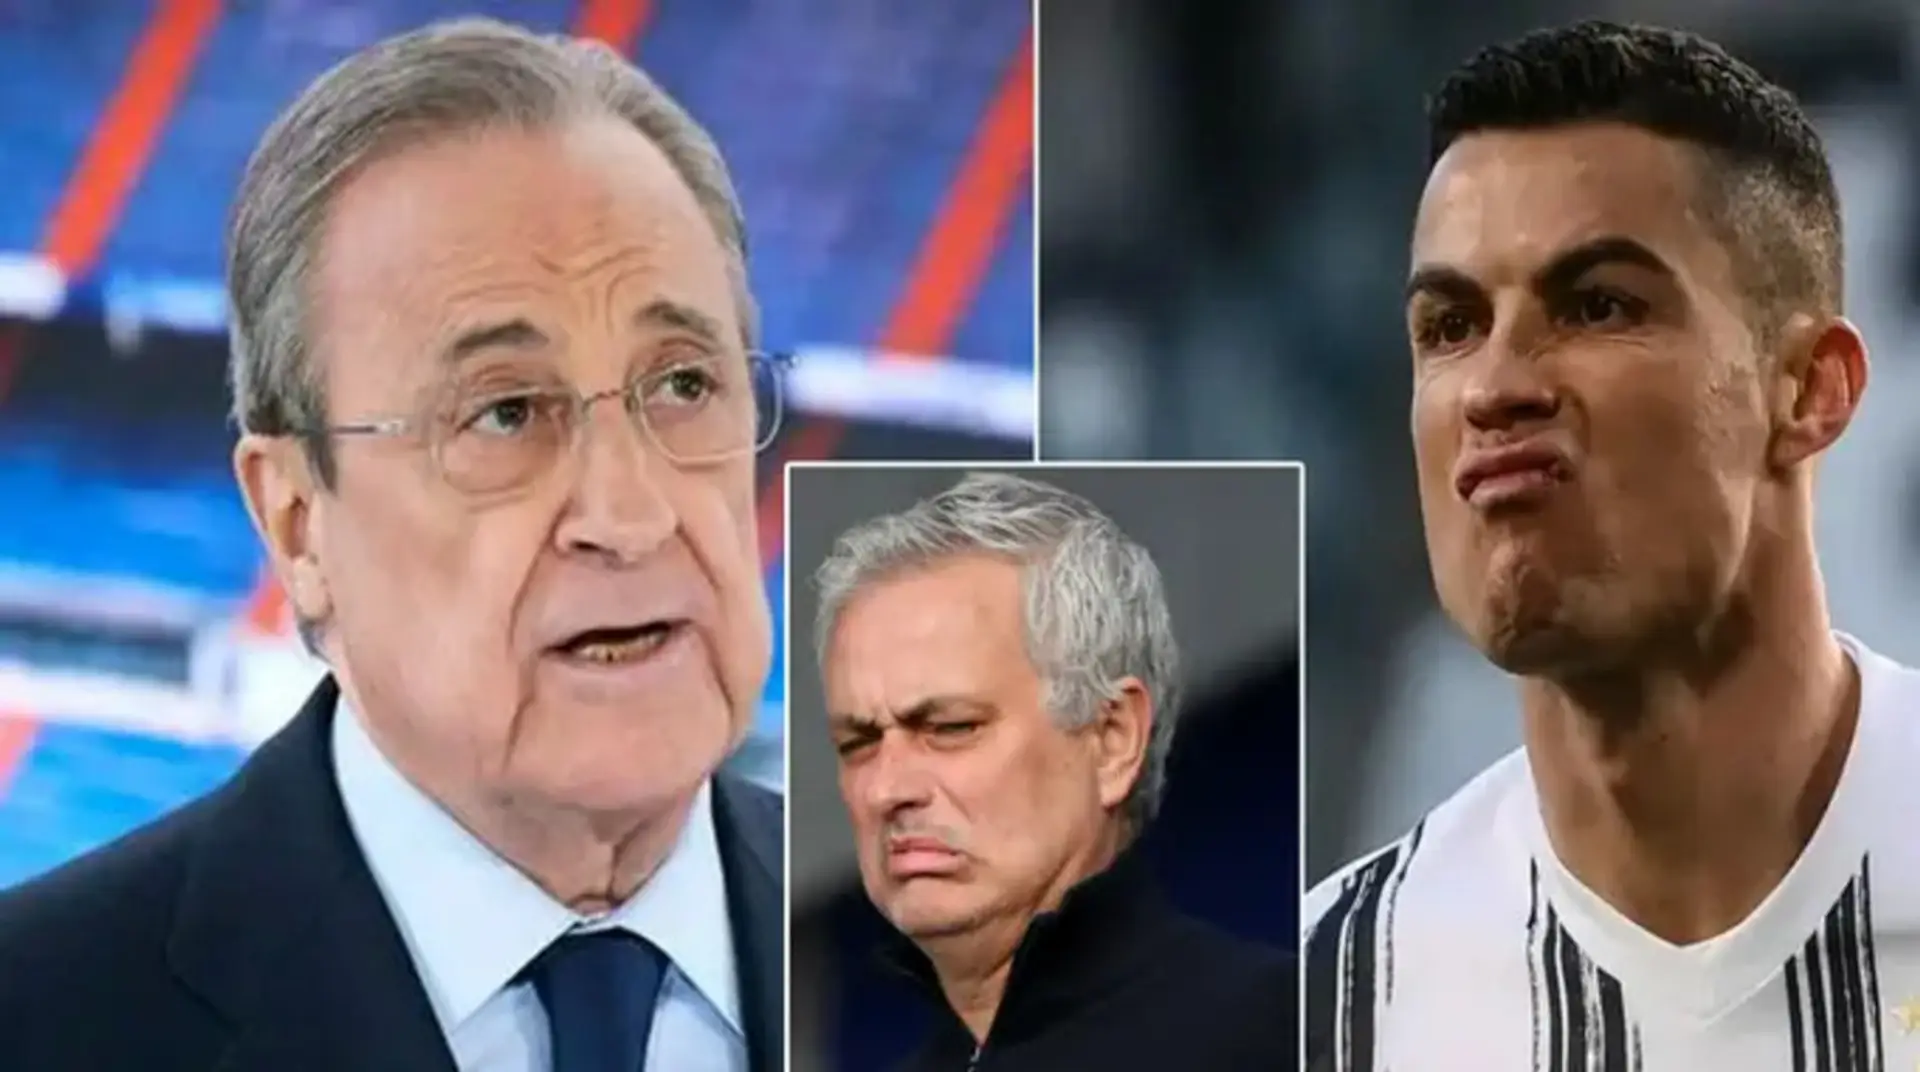 Nuevo audio filtrado: Florentino Pérez llama a Cristiano 'un imbécil y enfermo', dice que Mourinho es 'anormal'